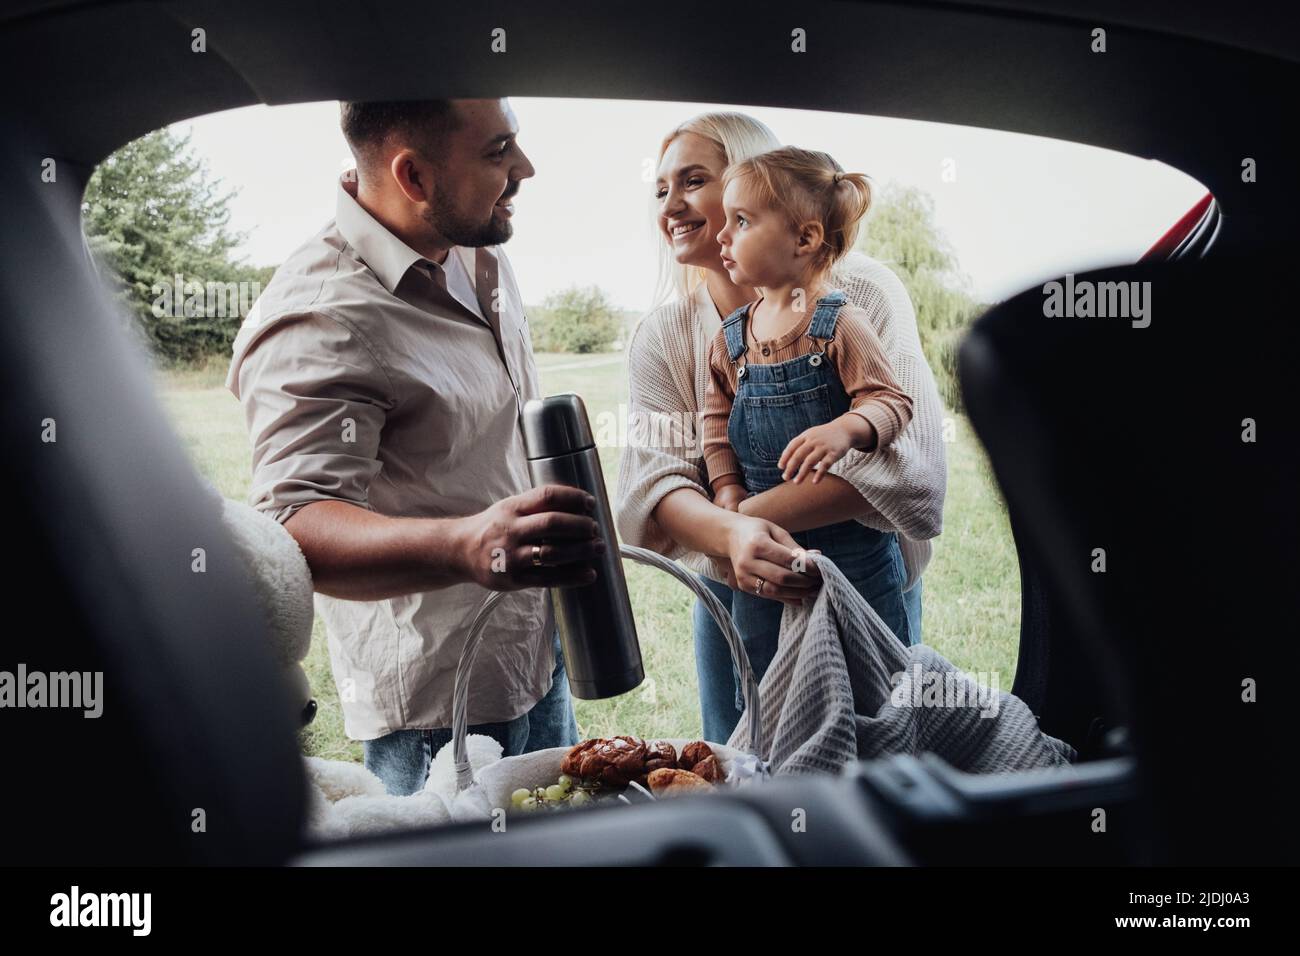 Junge Familie, zwei Eltern mit ihrem kleinen Kind, die sich auf ein Picknick im Freien vorbereiten, Blick durch den offenen Kofferraum des SUV-Autos Stockfoto